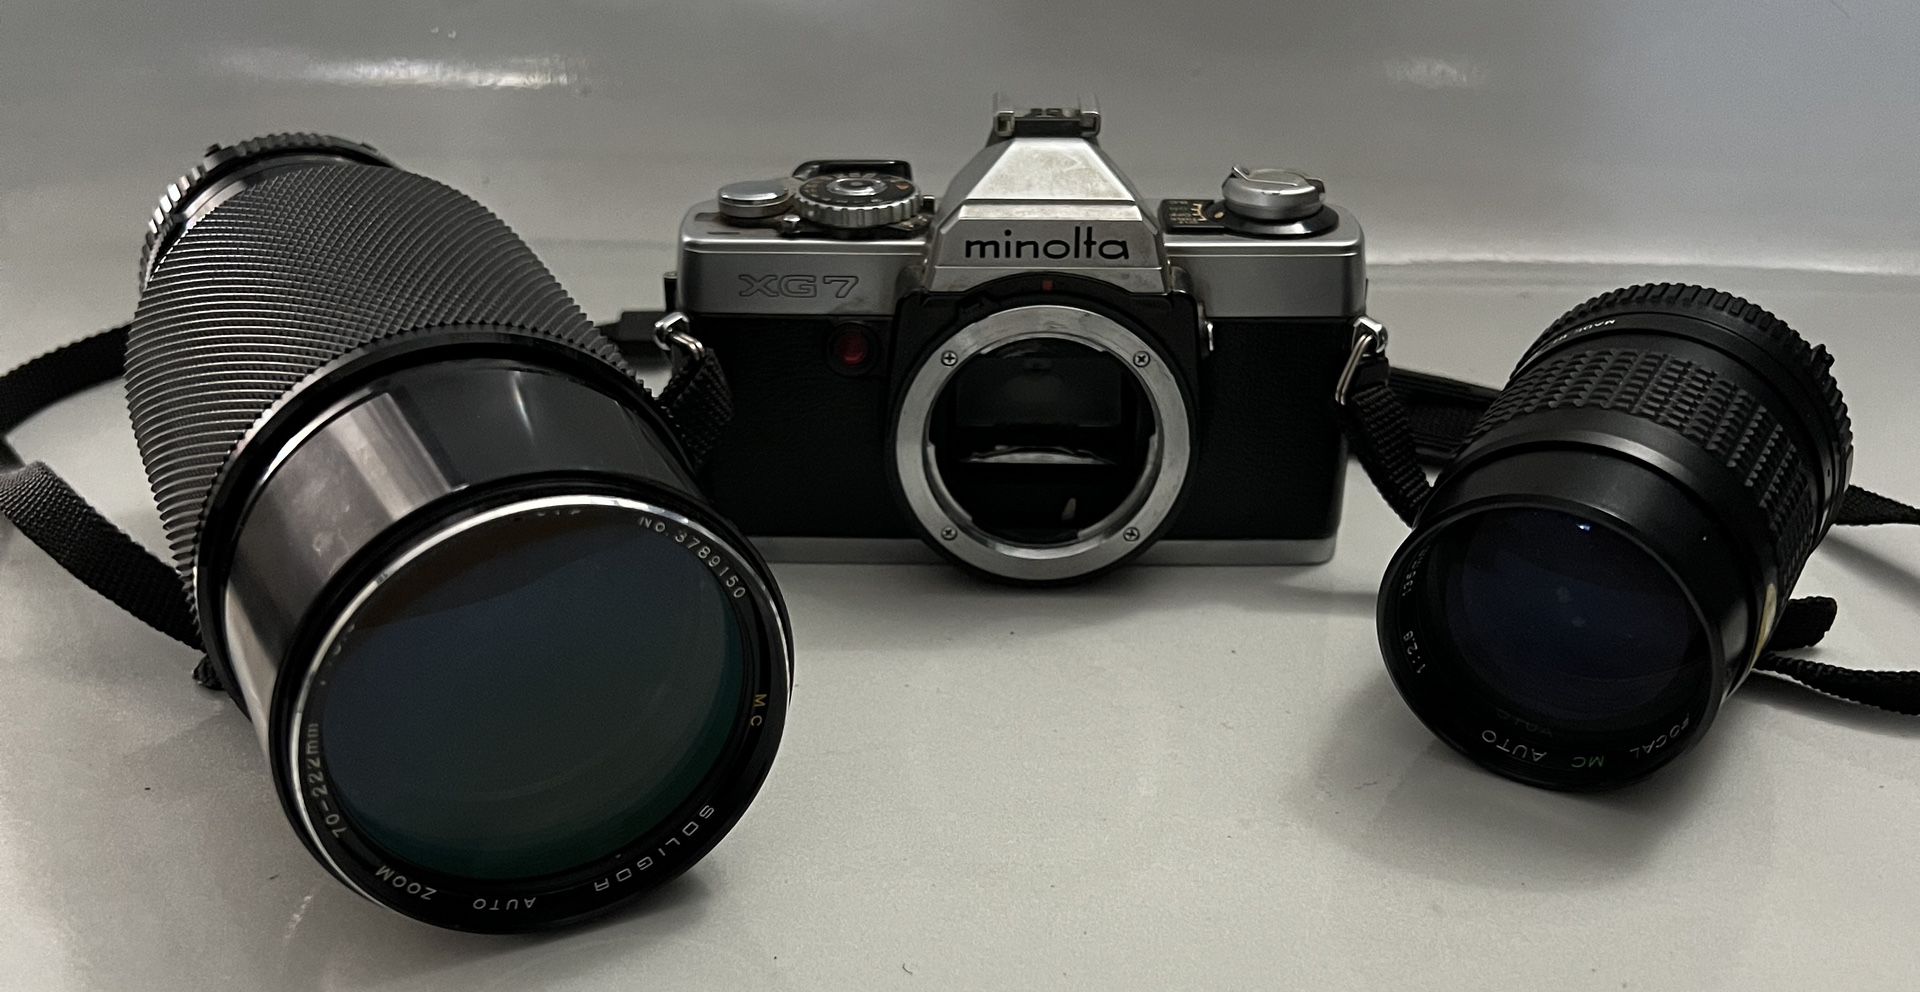 Minolta XG-7 35mm SLR Film Camera W/ 2 Lens UNTESTED